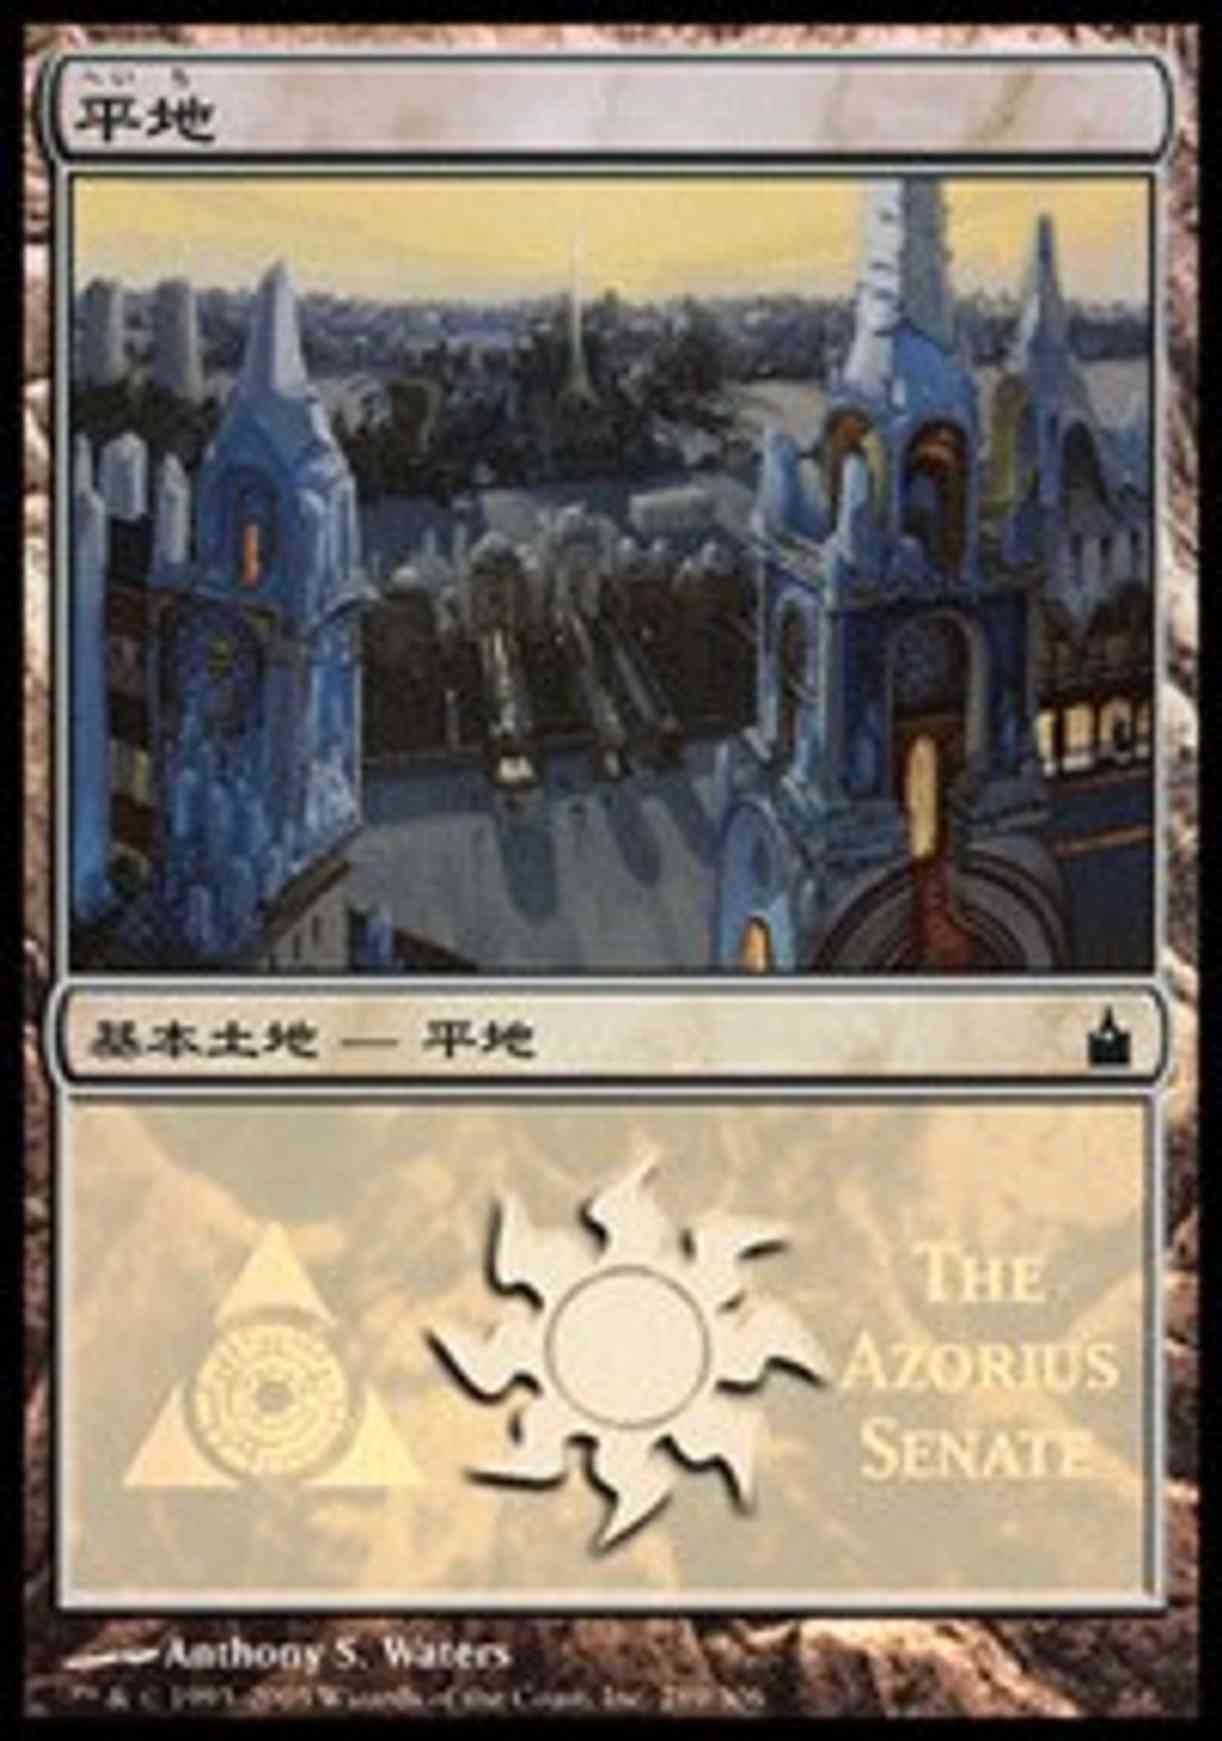 Plains - Azorius Senate magic card front